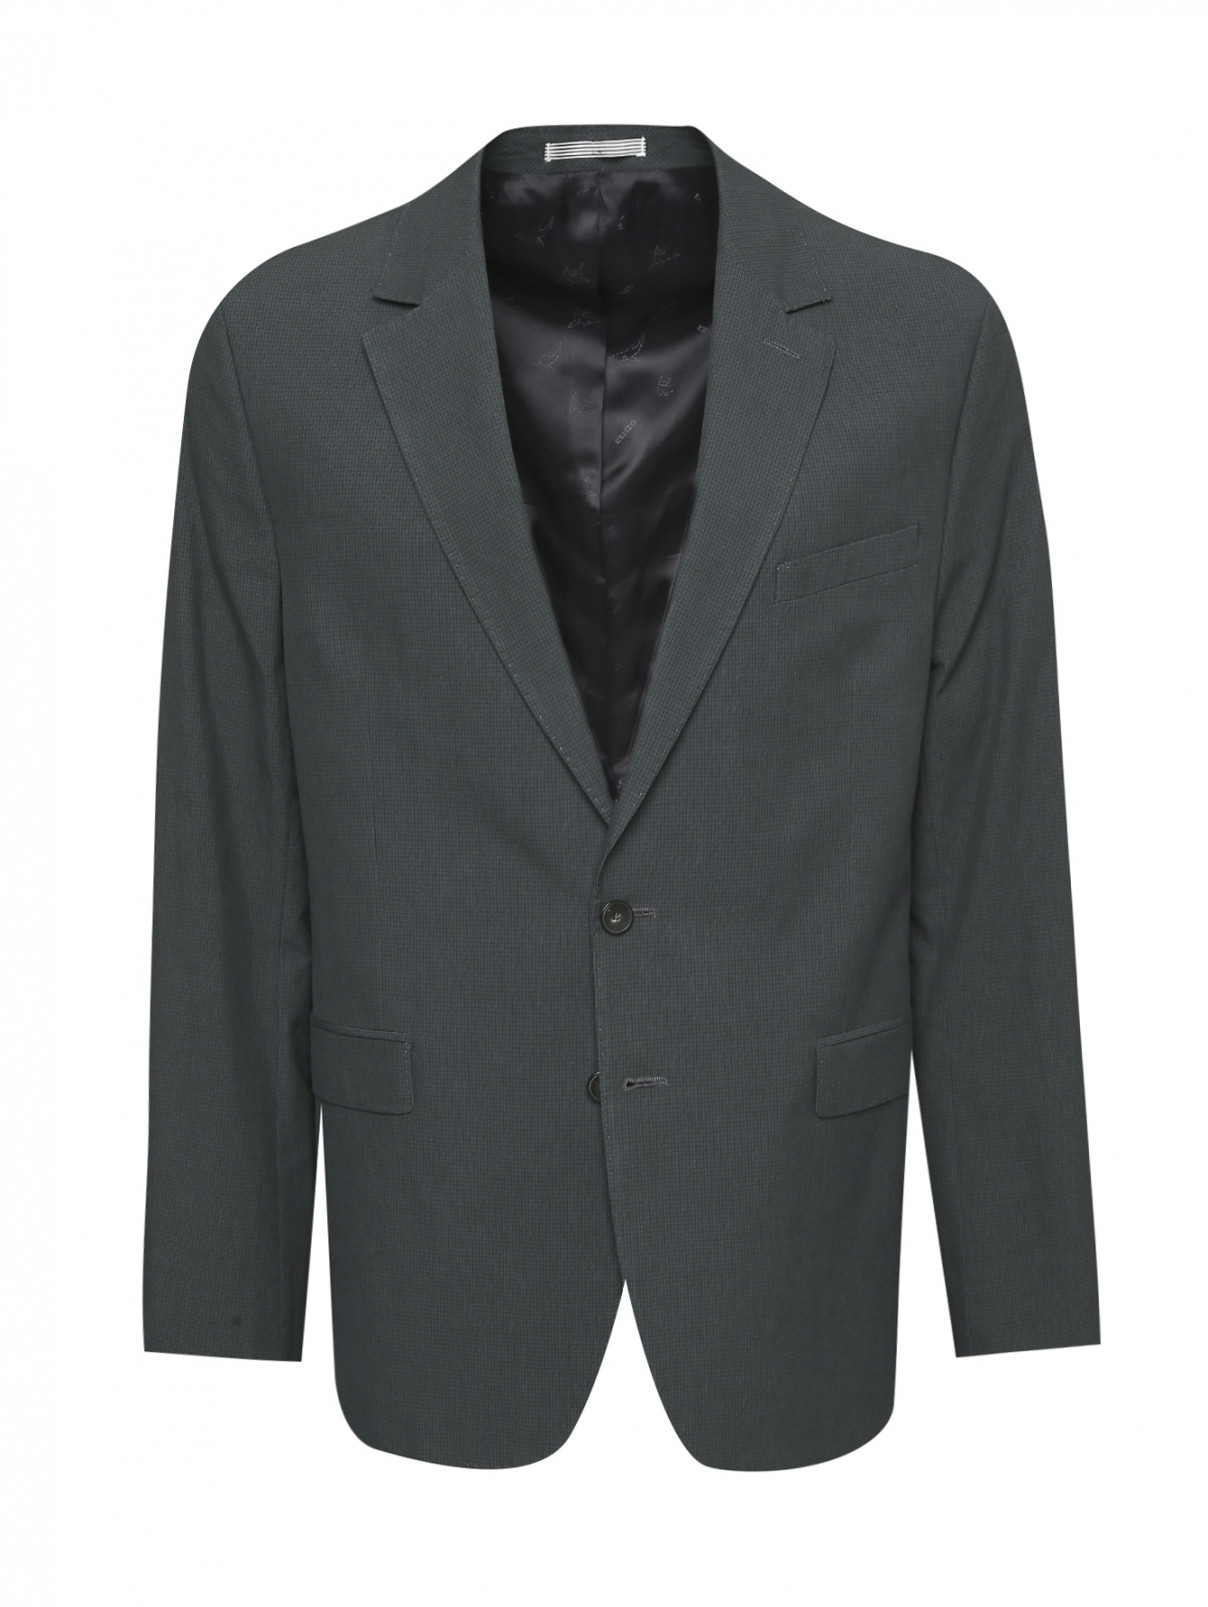 Пиджак из хлопка и льна Kenzo  –  Общий вид  – Цвет:  Зеленый